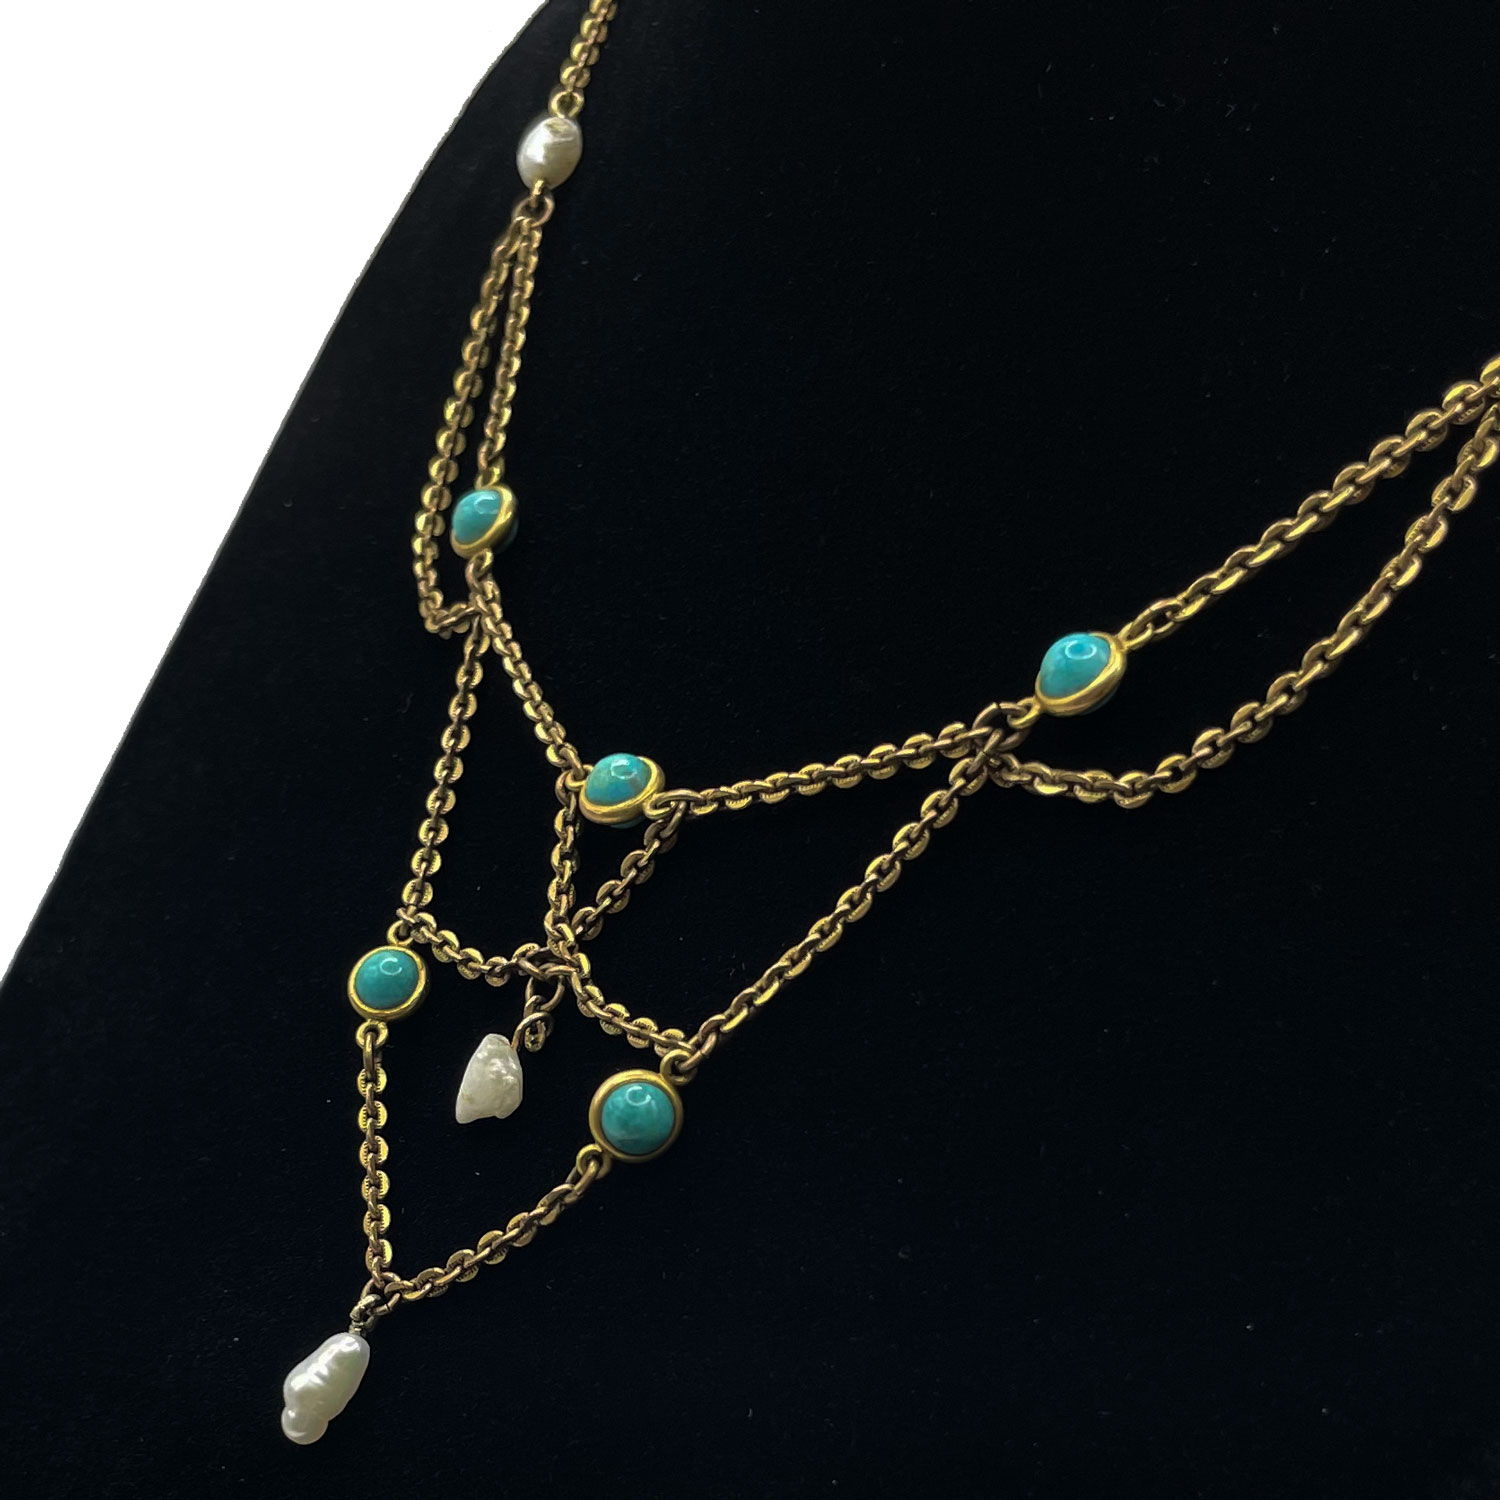 Antique Art Nouveau festoon necklace